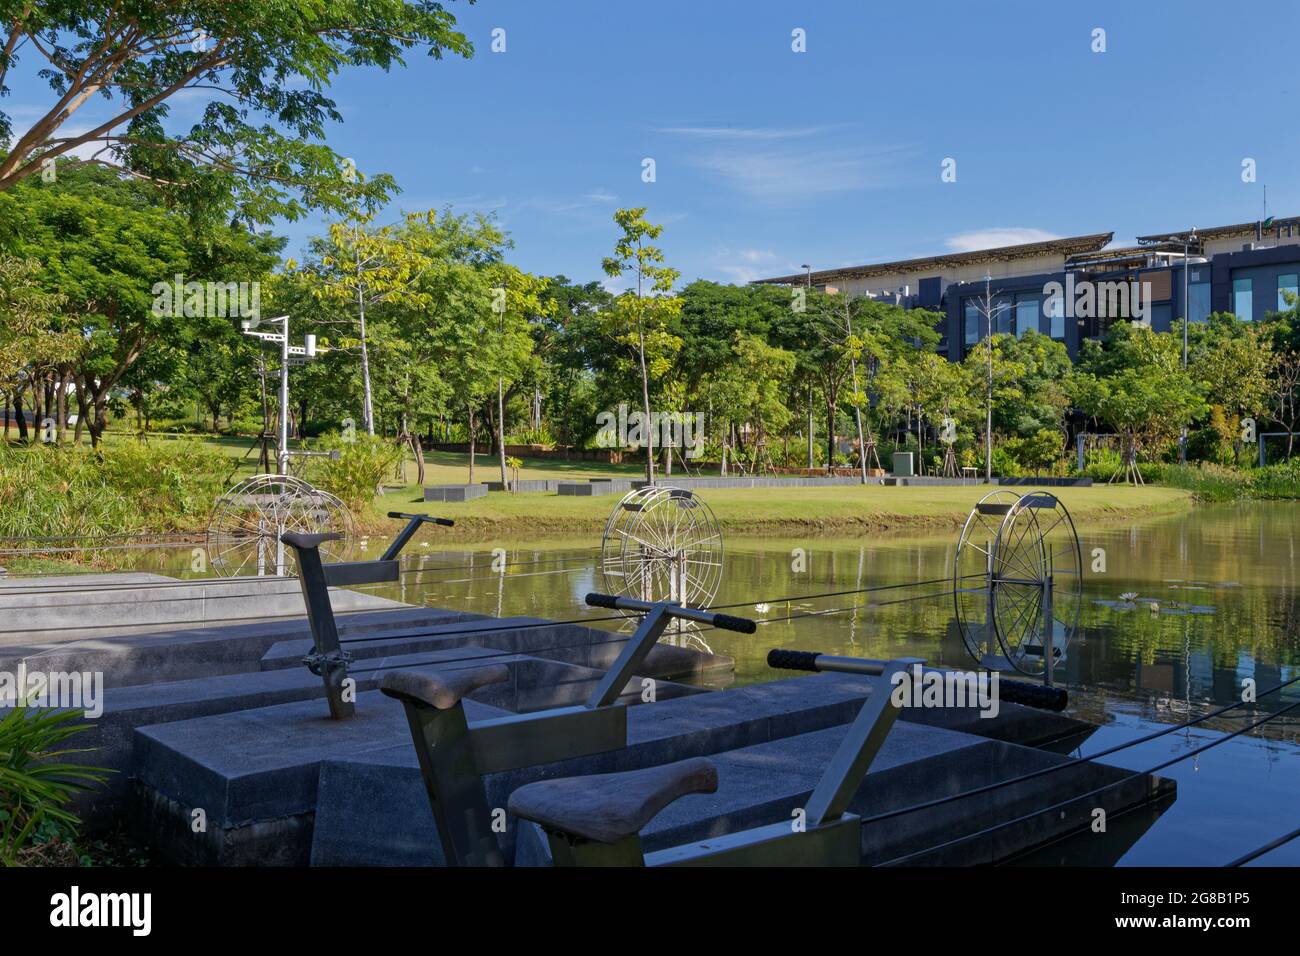 Chulalongkorn University Centenary Park, Bangkok Stock Photo